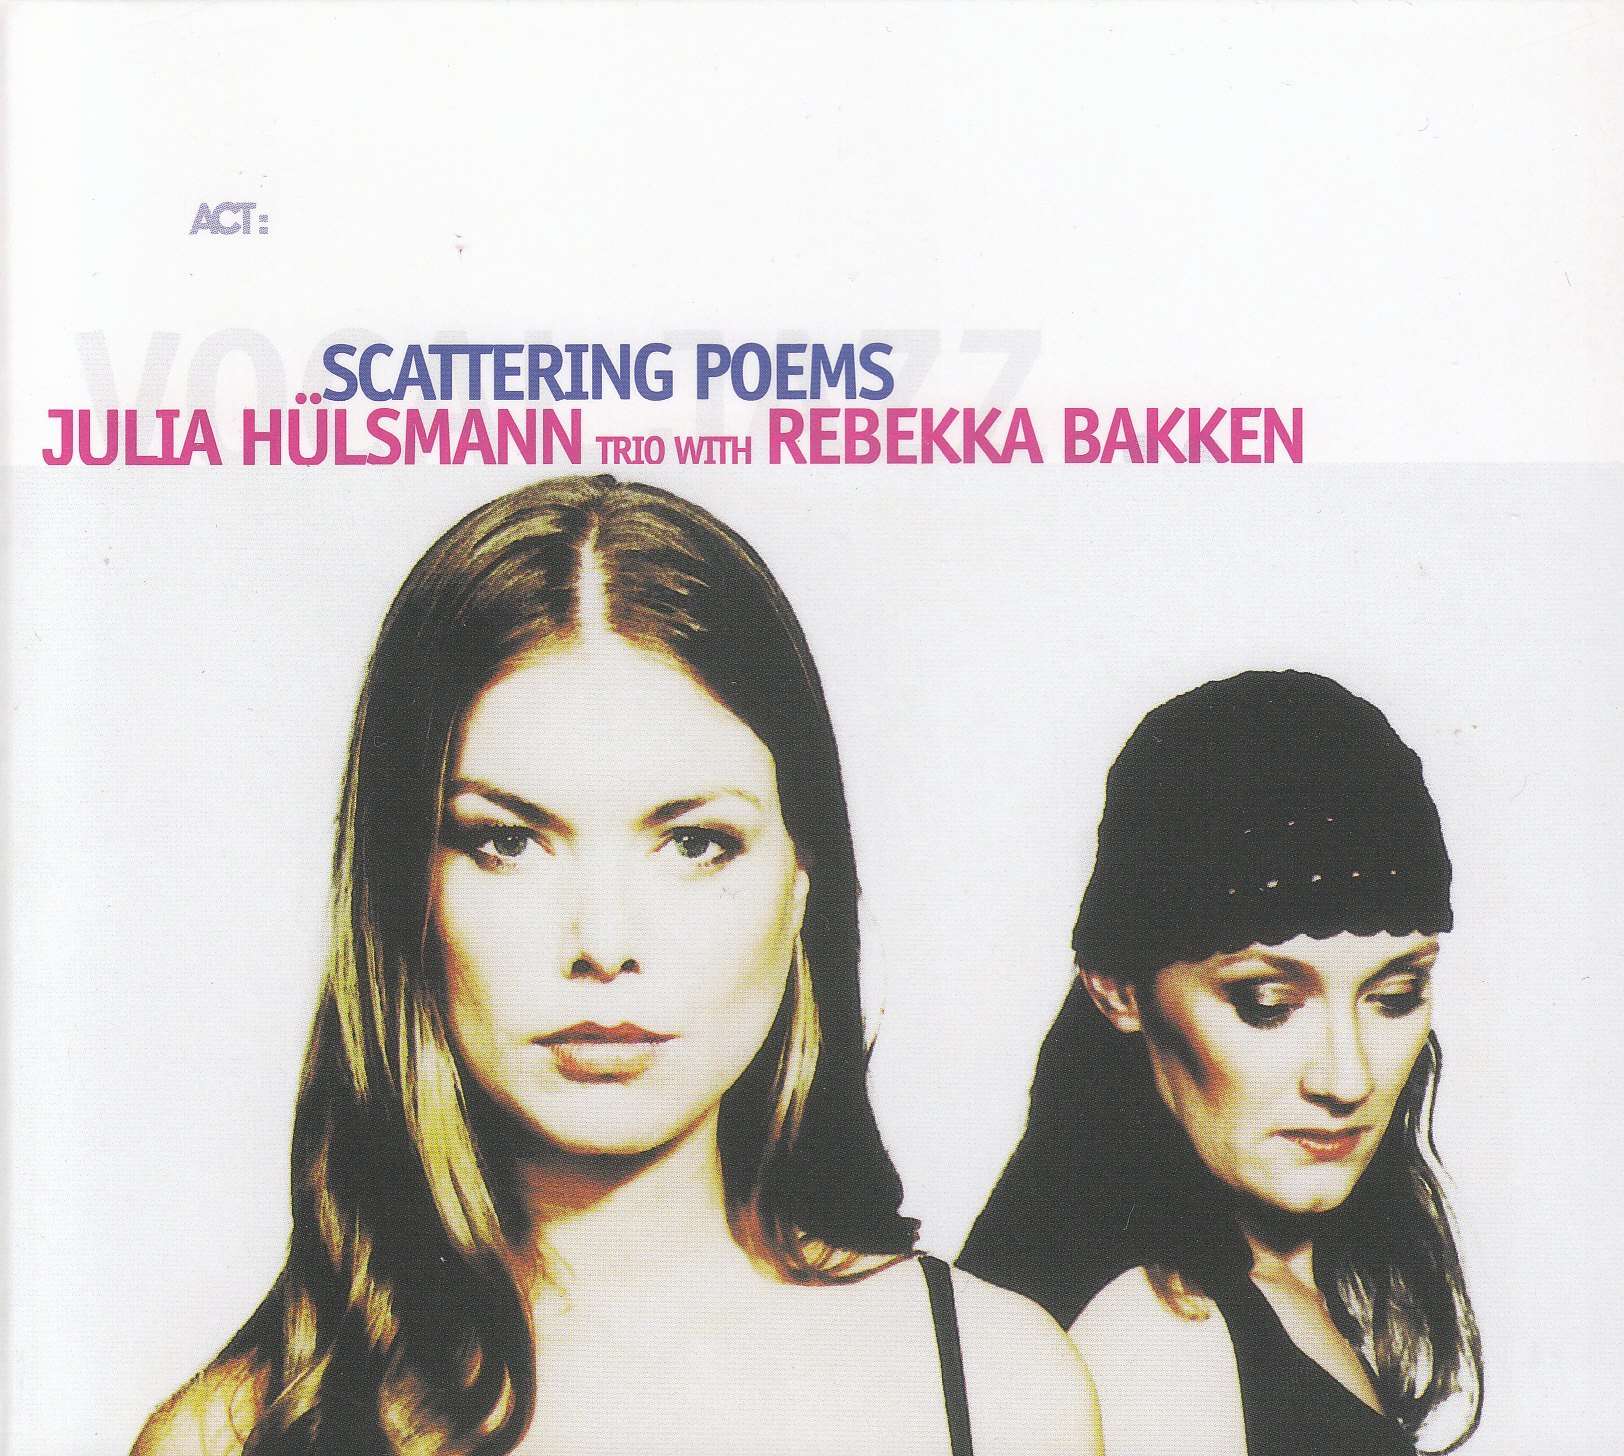 Album-Cover Scattering Poems von der deutschen Pianistin Julia Hülsmann und der norwegischen Sängerin Rebekka Bakken.